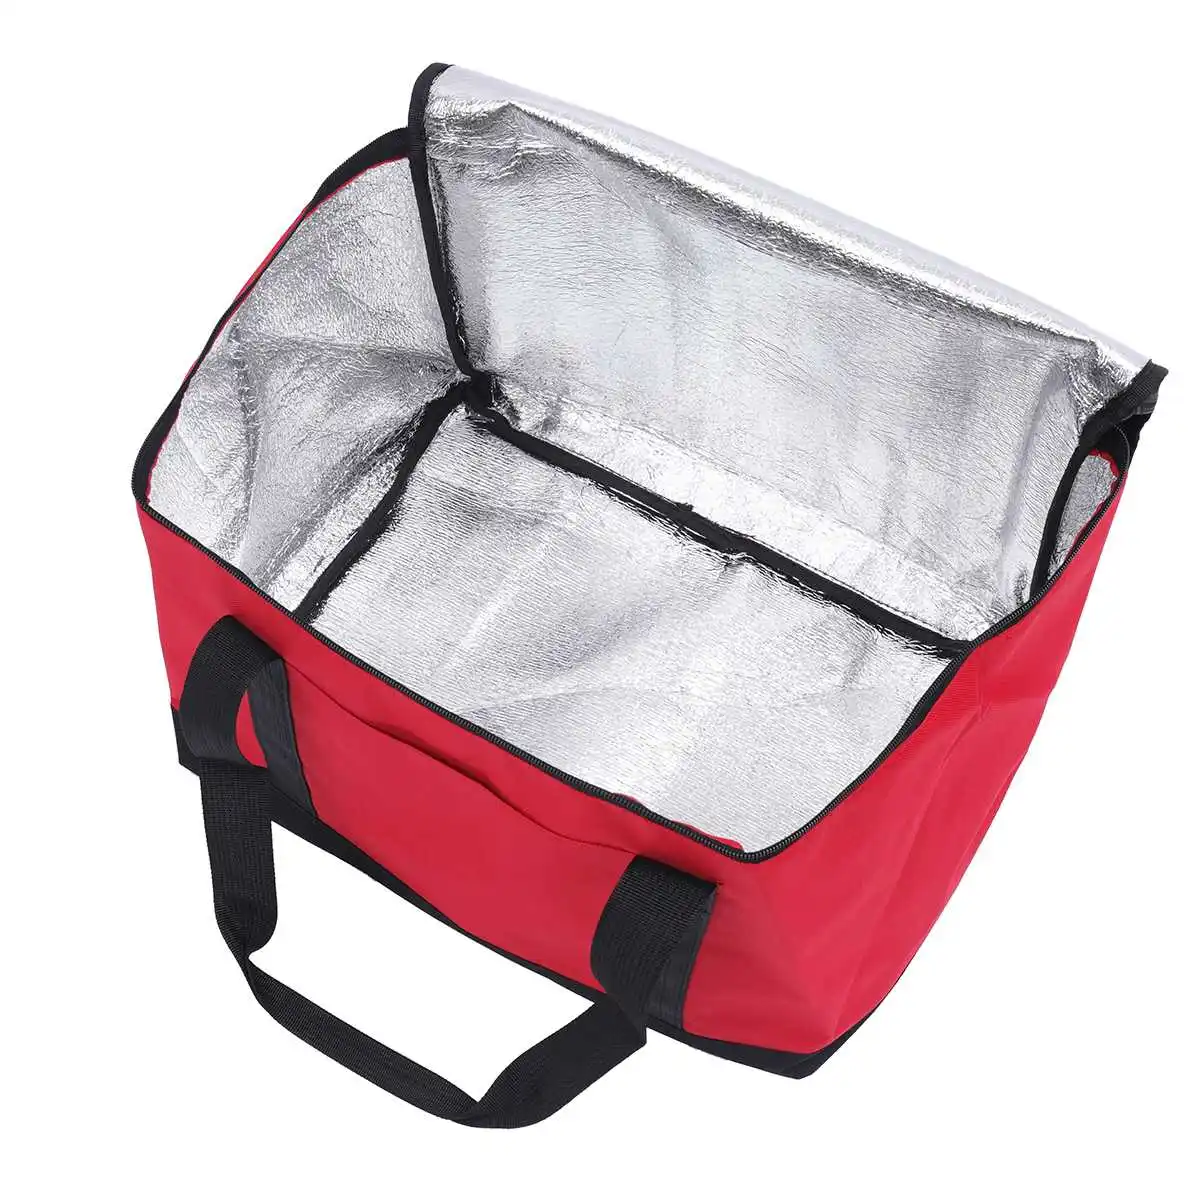 27L еды Пакет Изолированный рюкзак драйвер тепловой водонепроницаемый еда сумки для горячей еды напиток сумка через плечо